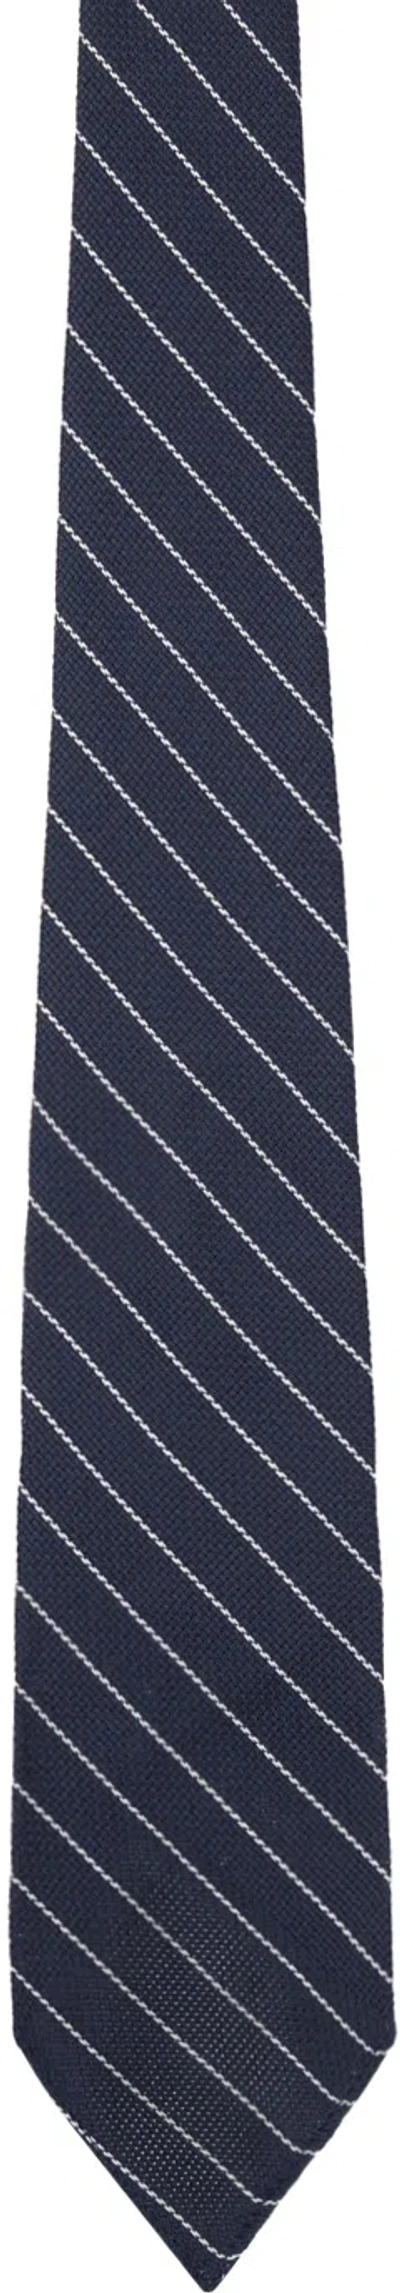 Rrl Navy & White Grenadine Tie In Blue